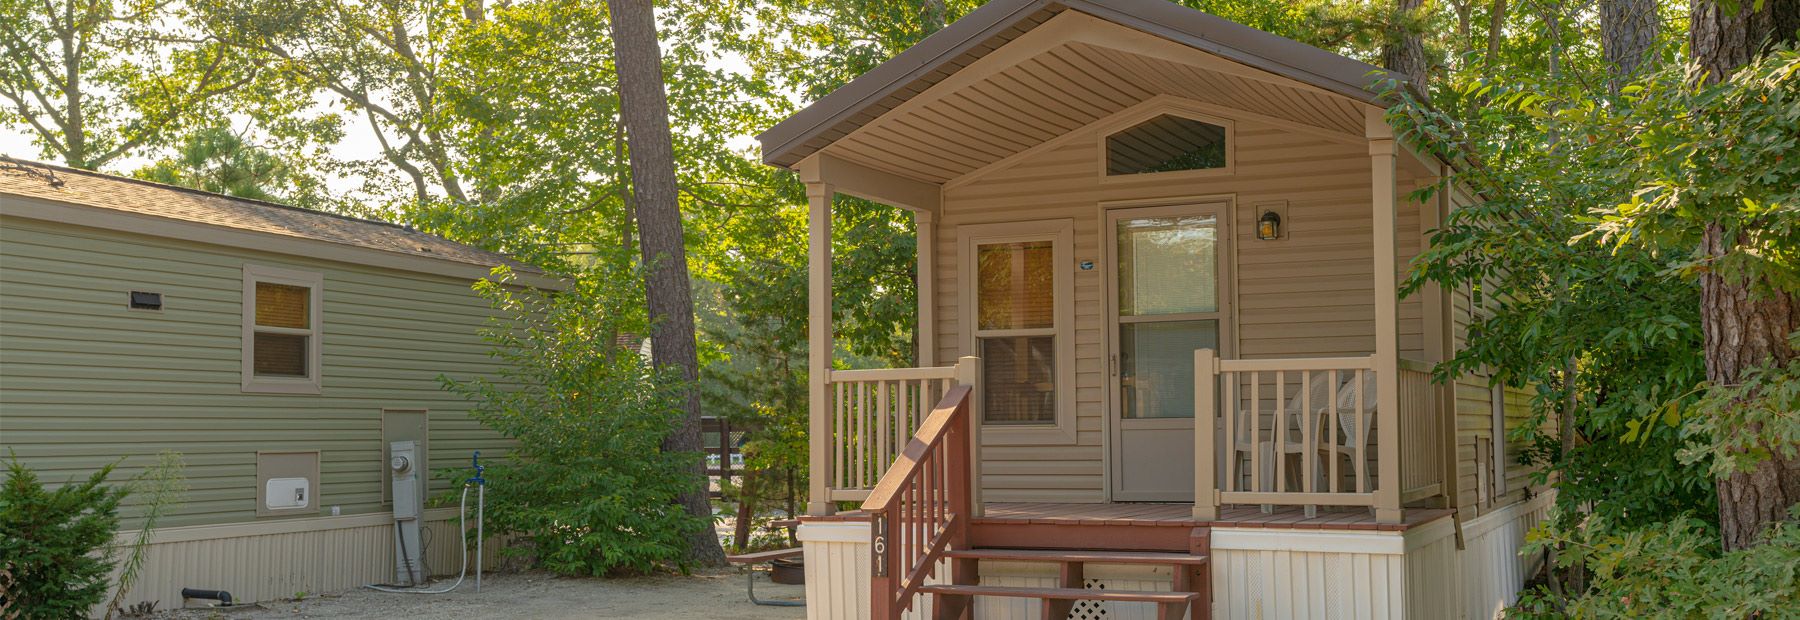 Big Timber Lake RV Camping Resort Vacation Home Sales